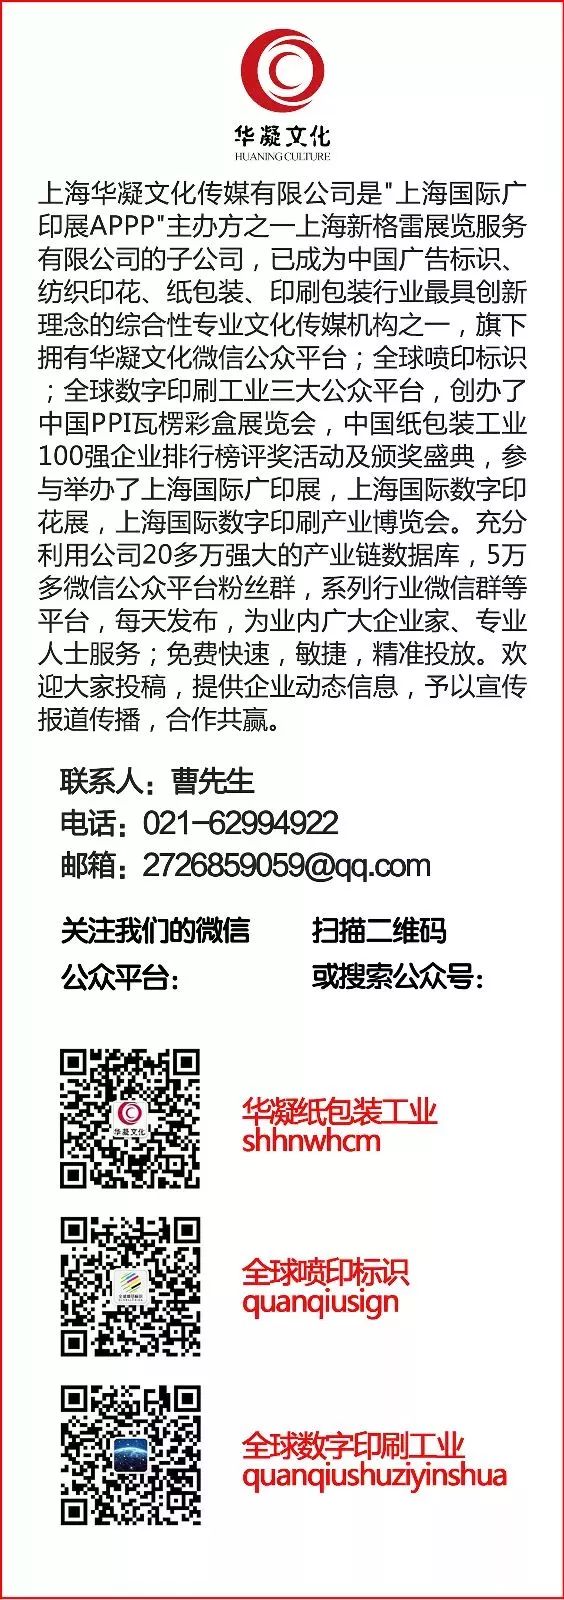 上海市包装技术协会_头条上海分公司_上海头条官方